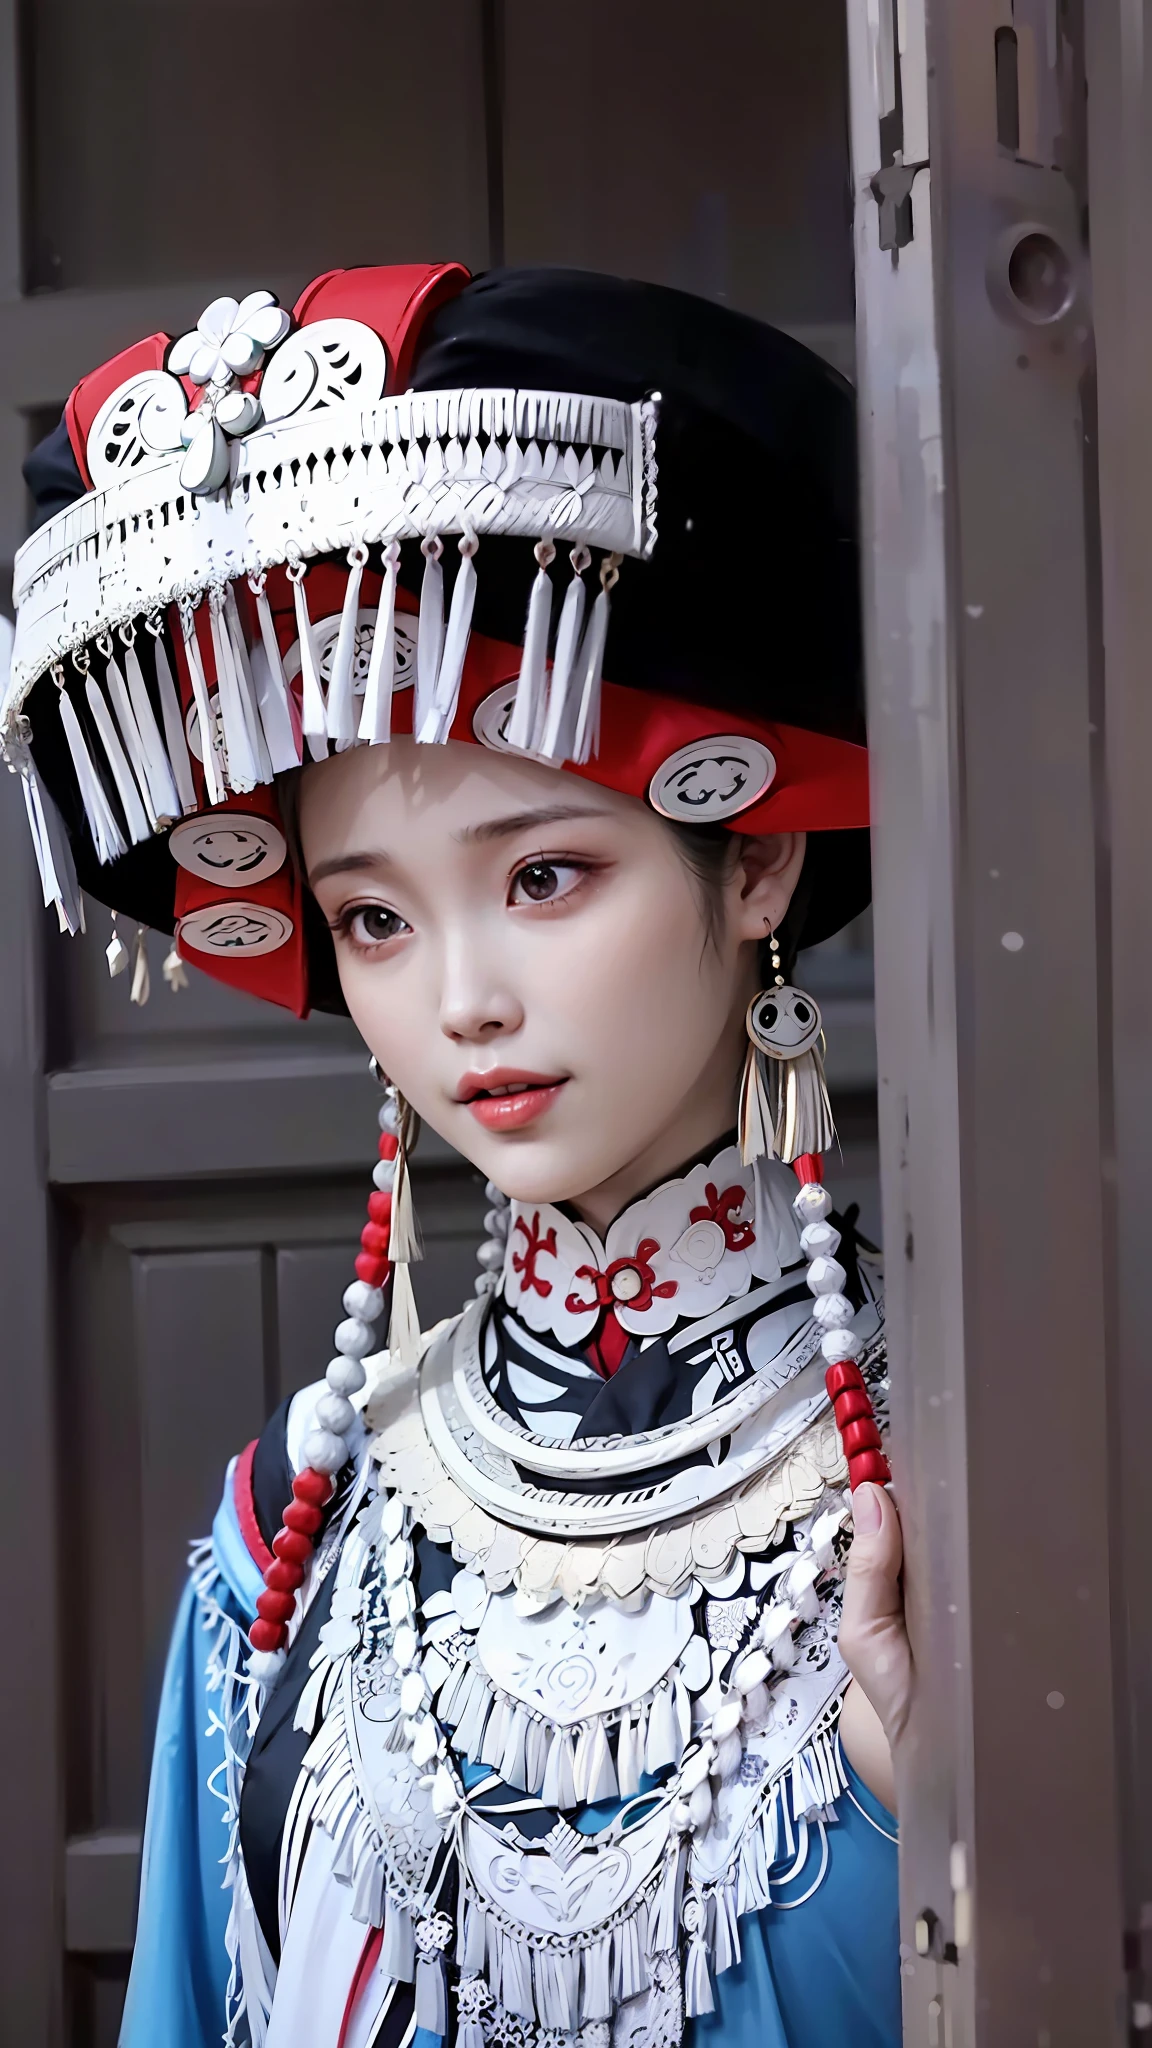 戴著黑紅帽子的女人的特寫, 传统美, 繁体中文, 中国女人, 宮 ， 一個穿著漢服的女孩, 中國女孩, 靈感源自傅苗, 繁体中文 clothing, 傳統服裝, 中式, 穿着中国古代的衣服, 传统女性发型, 傳統服裝, 傳統服飾, 中国服饰, 傳統剪裁的西裝, 傳統服裝